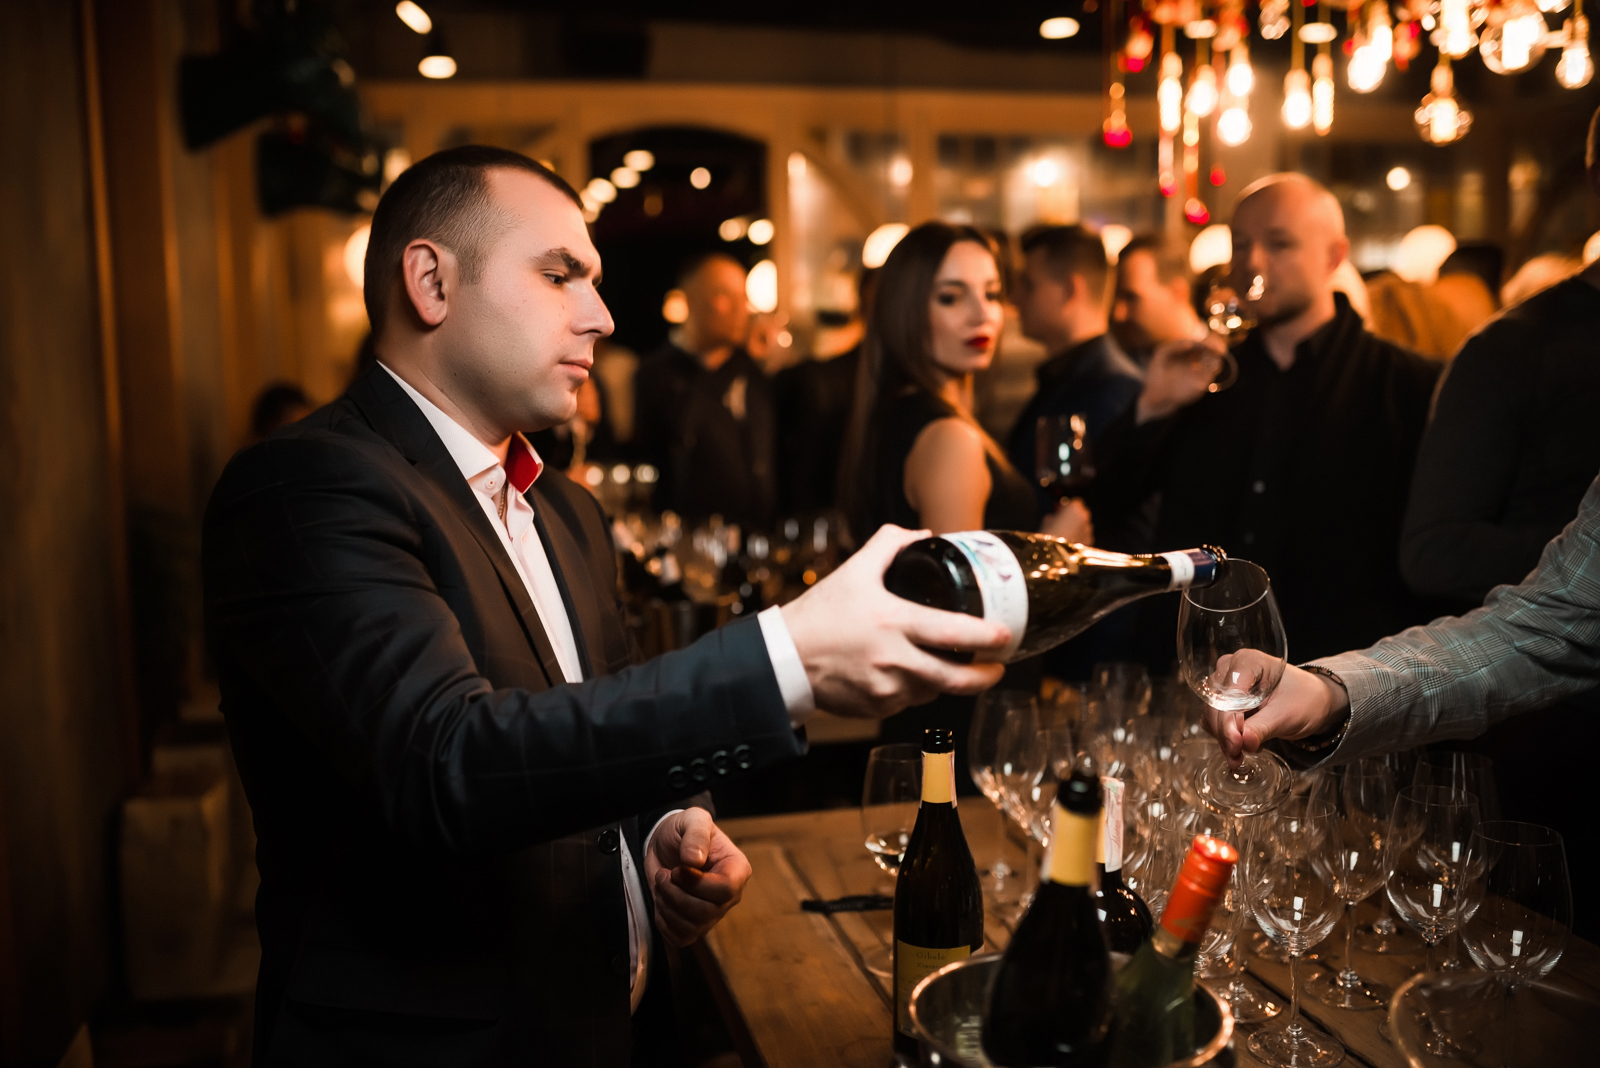 Праздничная дегустация вин и другие идеи виртуальных офисных вечеринок, о которых будут долго вспоминать ваши коллеги